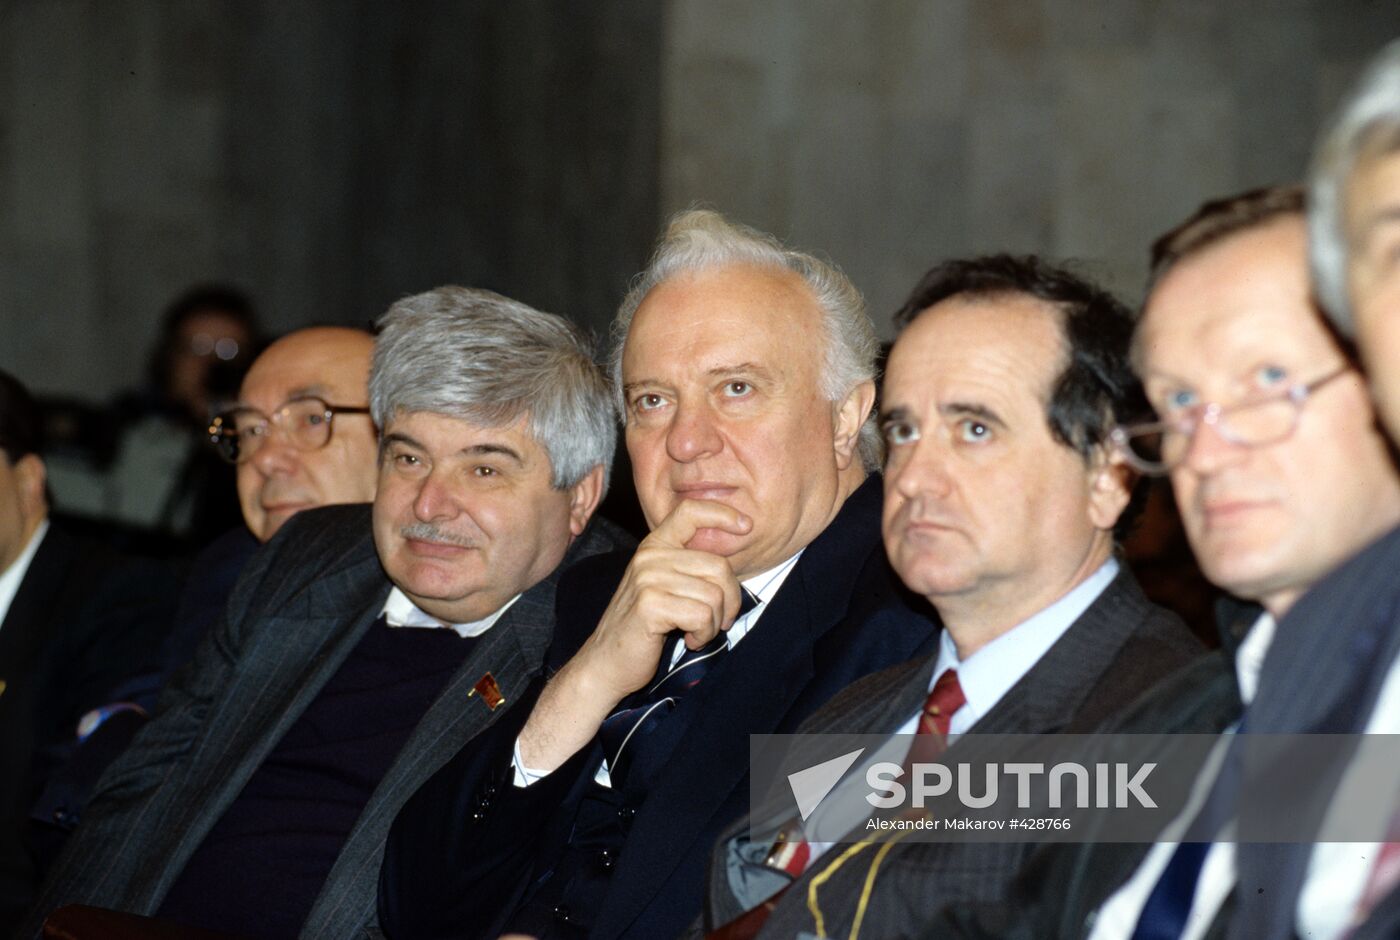 Eduard Shevardnadze, Alexander Yakovlev, and Gavriil Popov